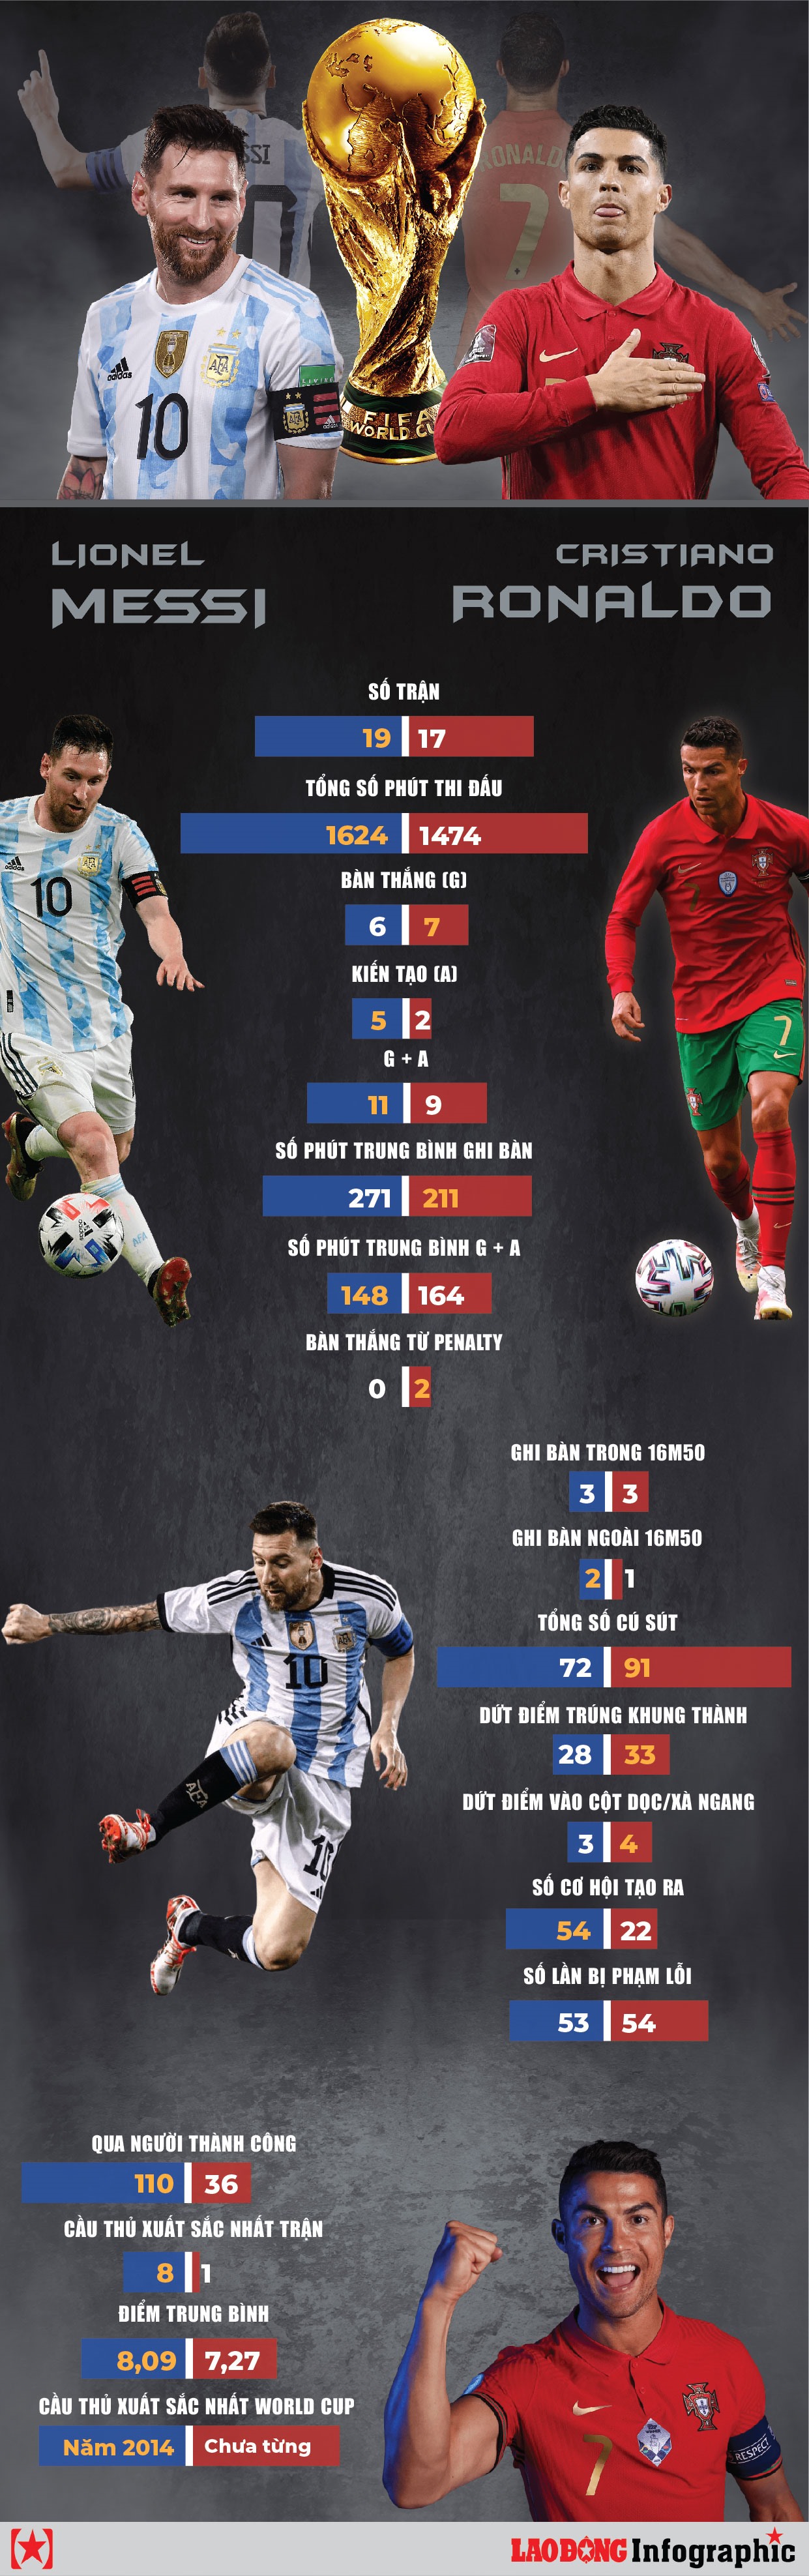 World Cup luôn là một sân chơi lớn cho các cầu thủ bóng đá trên khắp thế giới, và Messi và Ronaldo không phải là ngoại lệ. Sự ghi bàn và thống kê hoàn hảo của hai ngôi sao này đã giúp đội tuyển của họ vượt qua rất nhiều thử thách khó khăn. Nếu bạn muốn thấy những con số nổi bật trong sự nghiệp World Cup của Messi và Ronaldo, hãy xem hình ảnh liên quan.